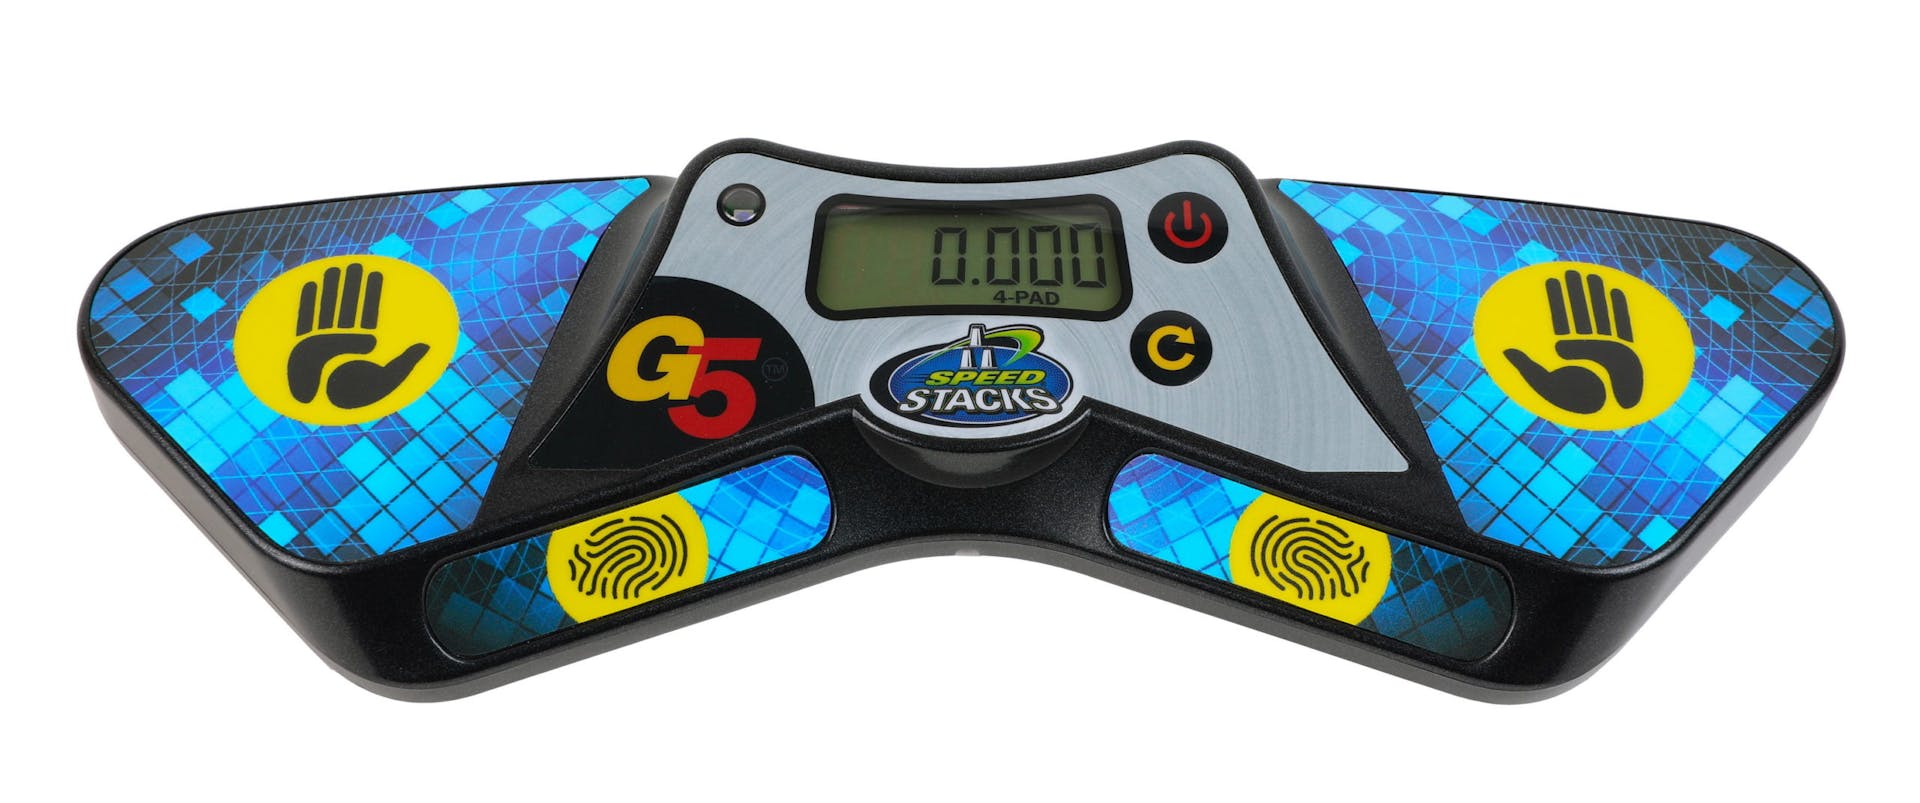 SpeedStacks G5 Pro Timer